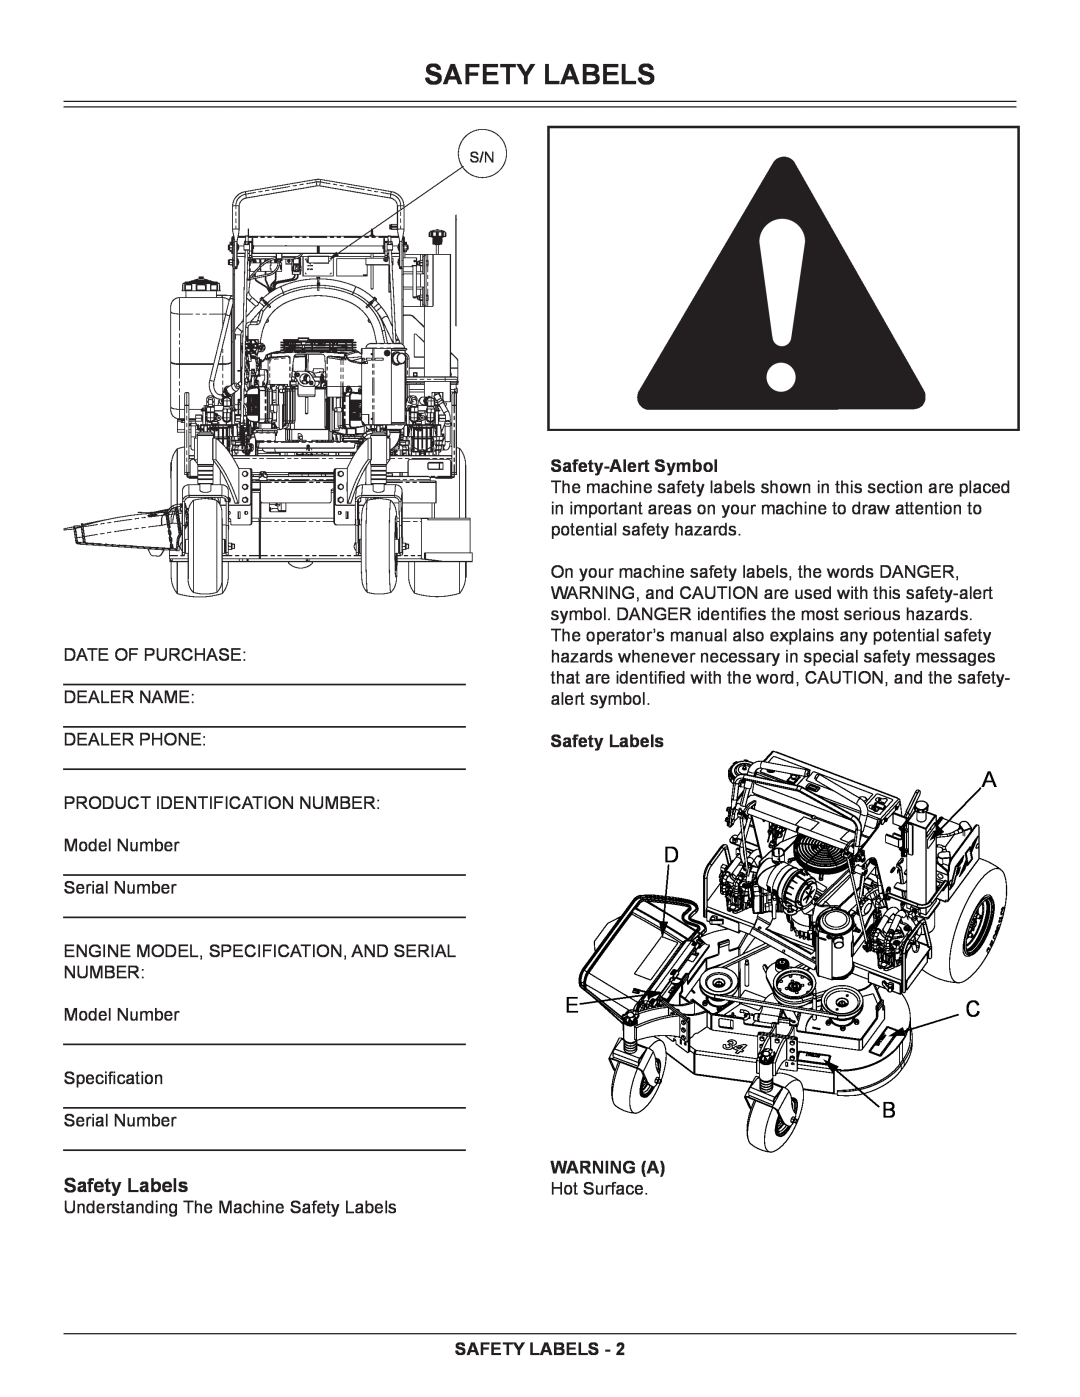 Great Dane GSRKA1934S manual Safety Labels, Safety-Alert Symbol, Warning A 